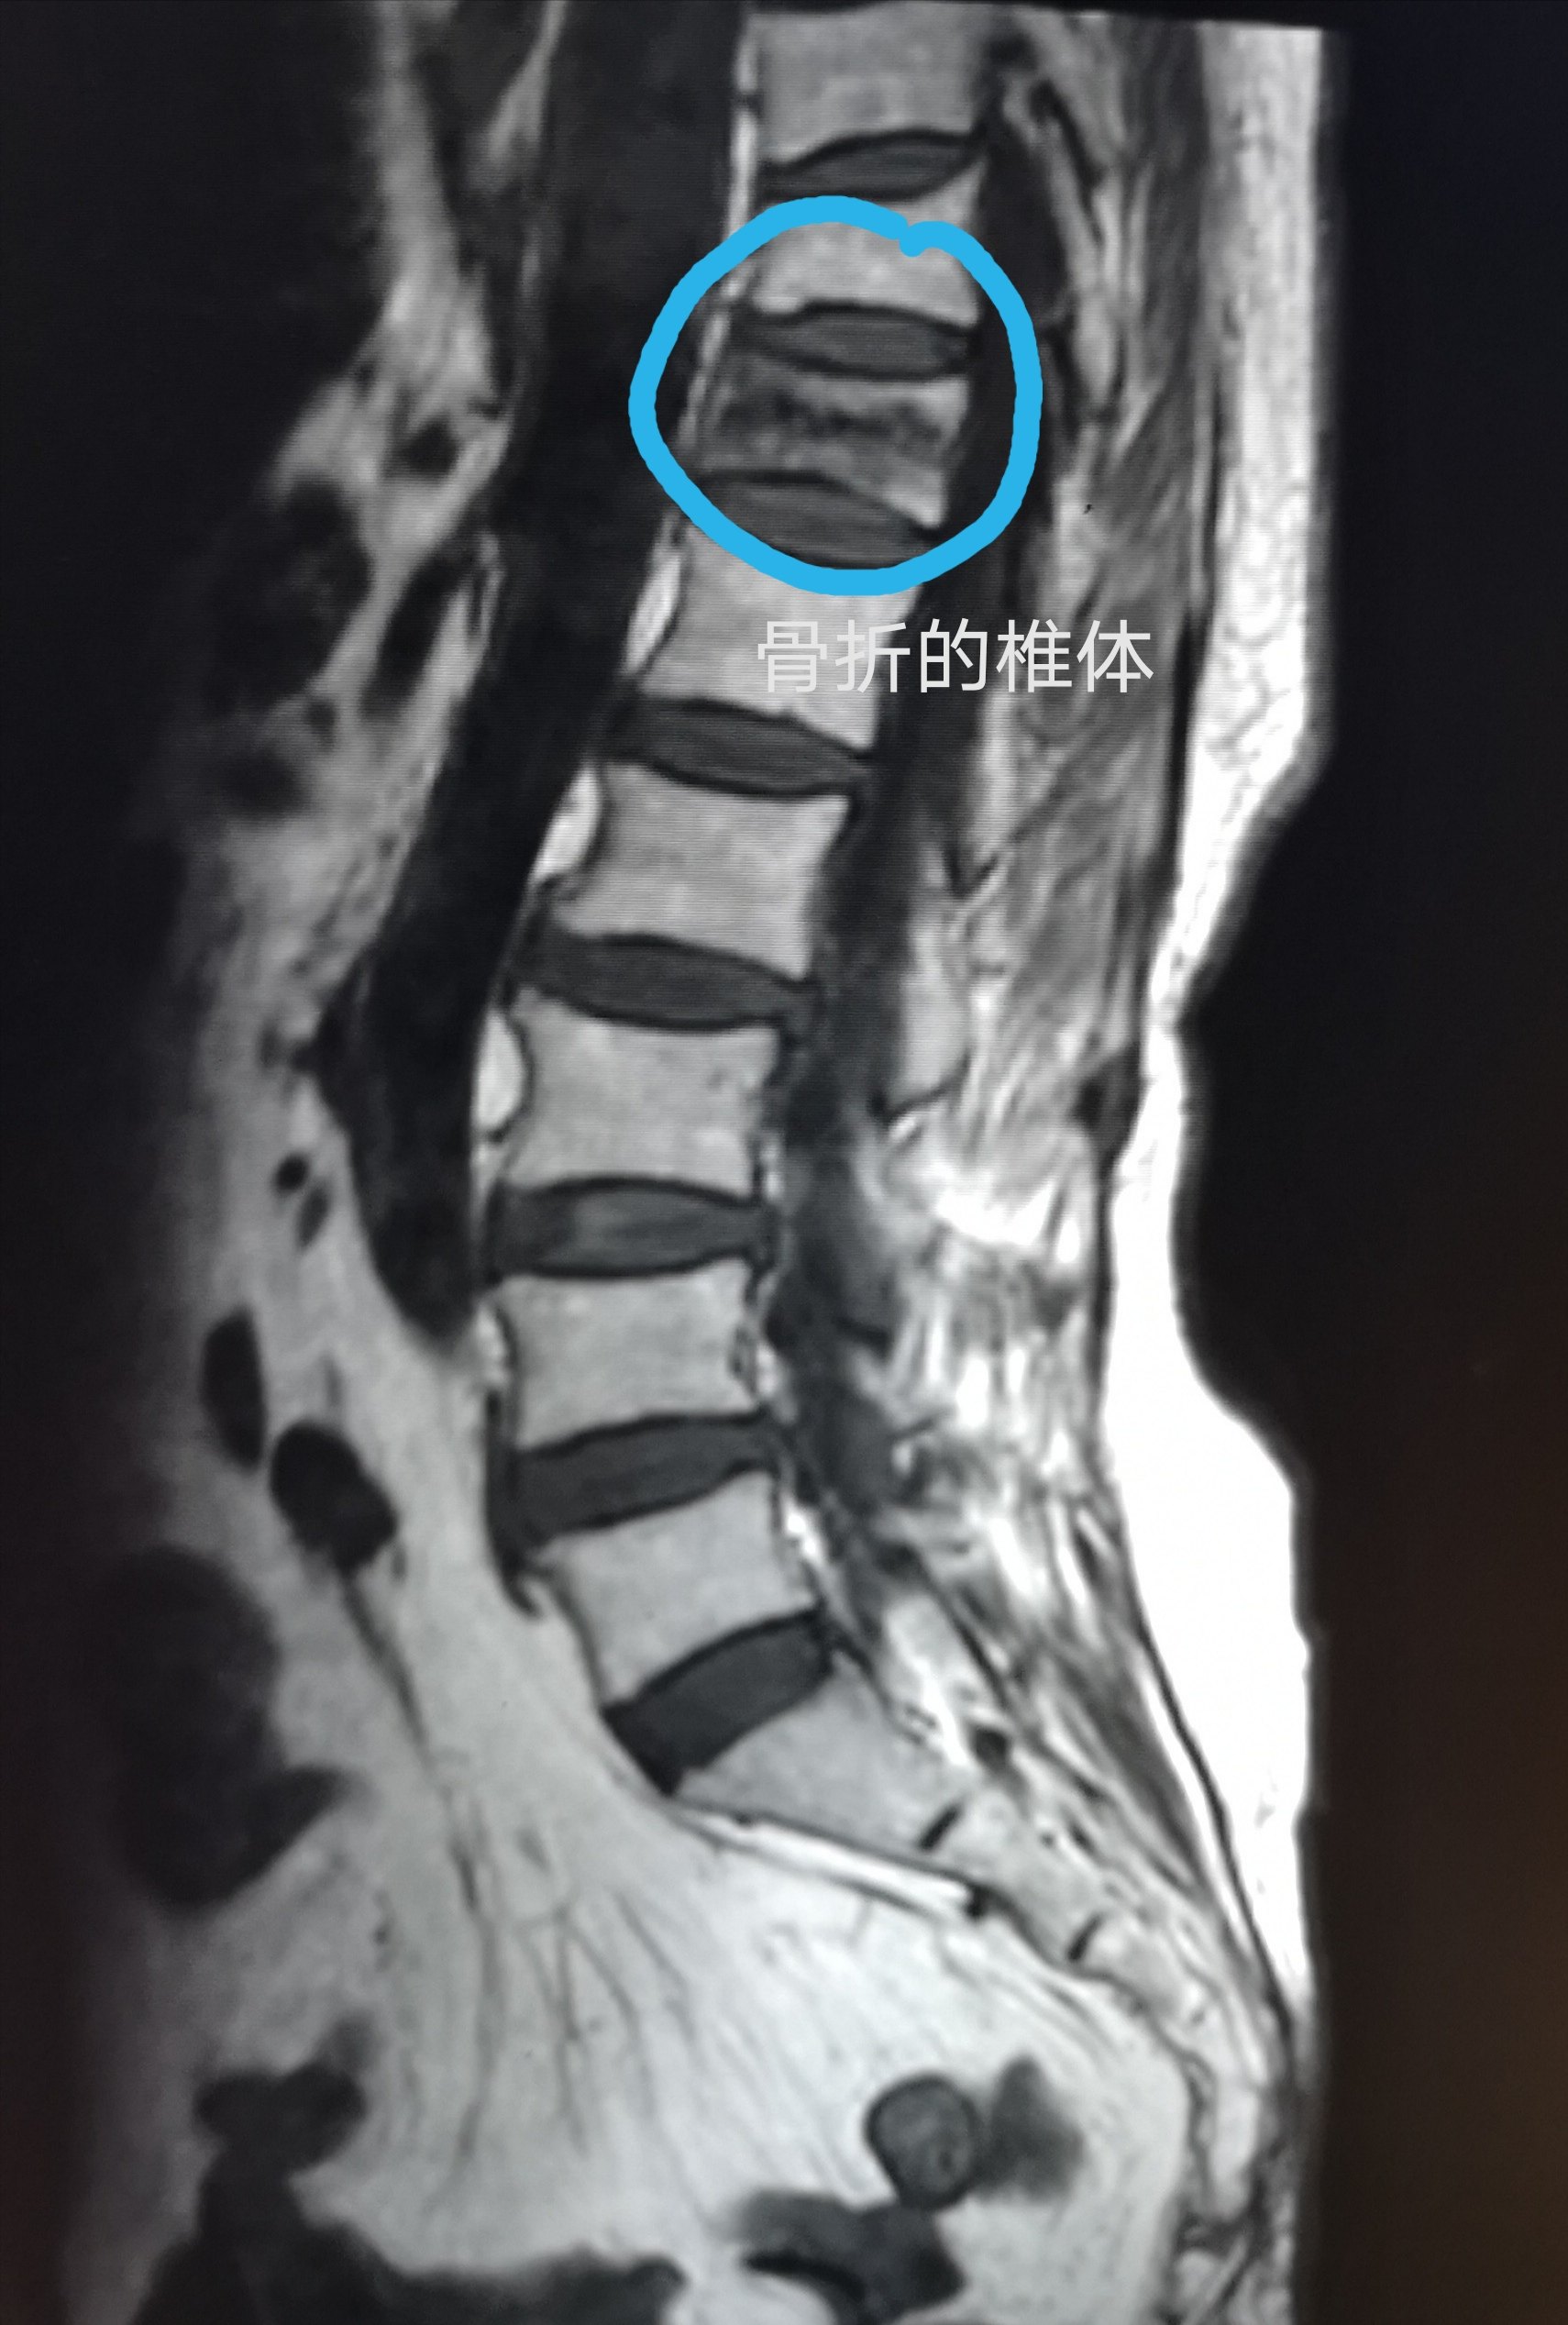 发生了脊柱压缩性骨折,如何治疗?